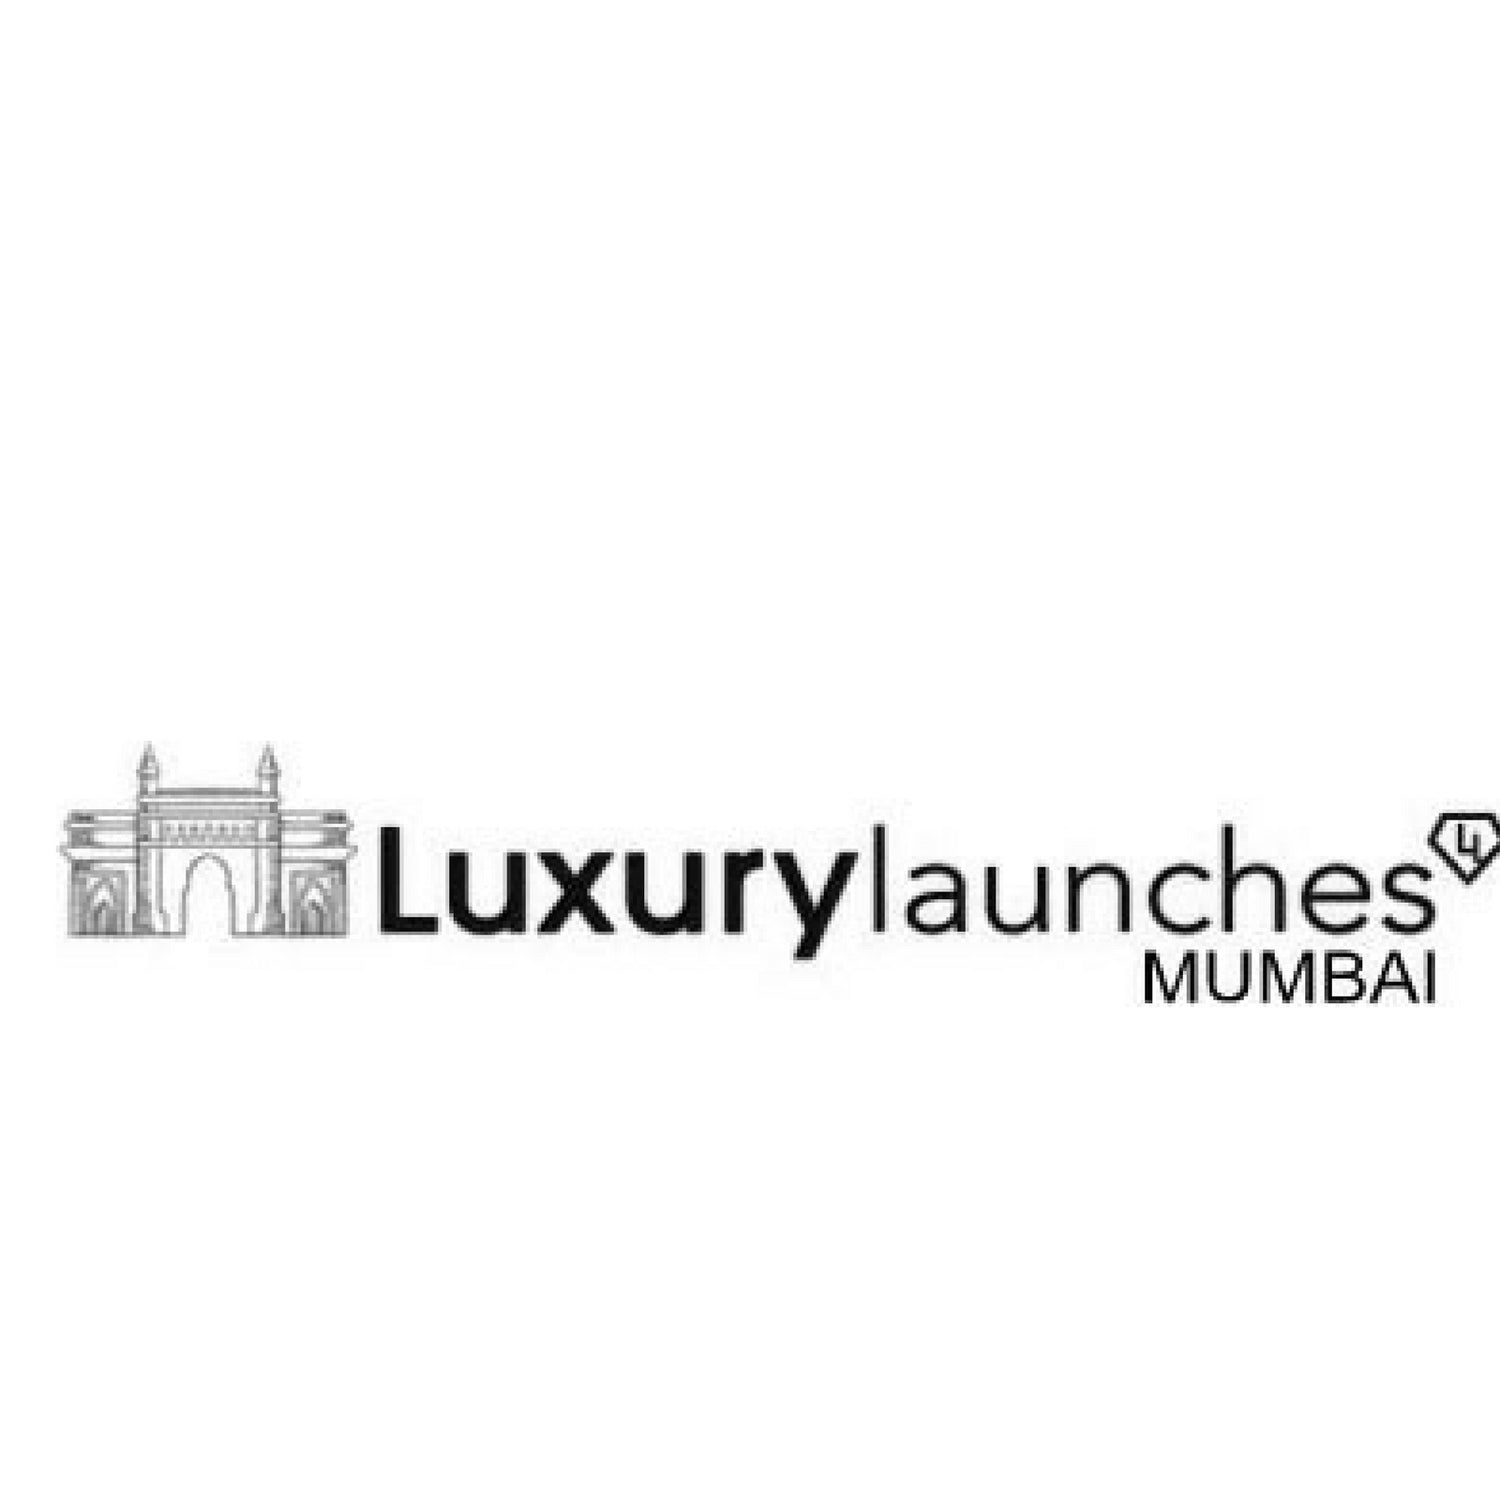 Luxury Launches Mumbai